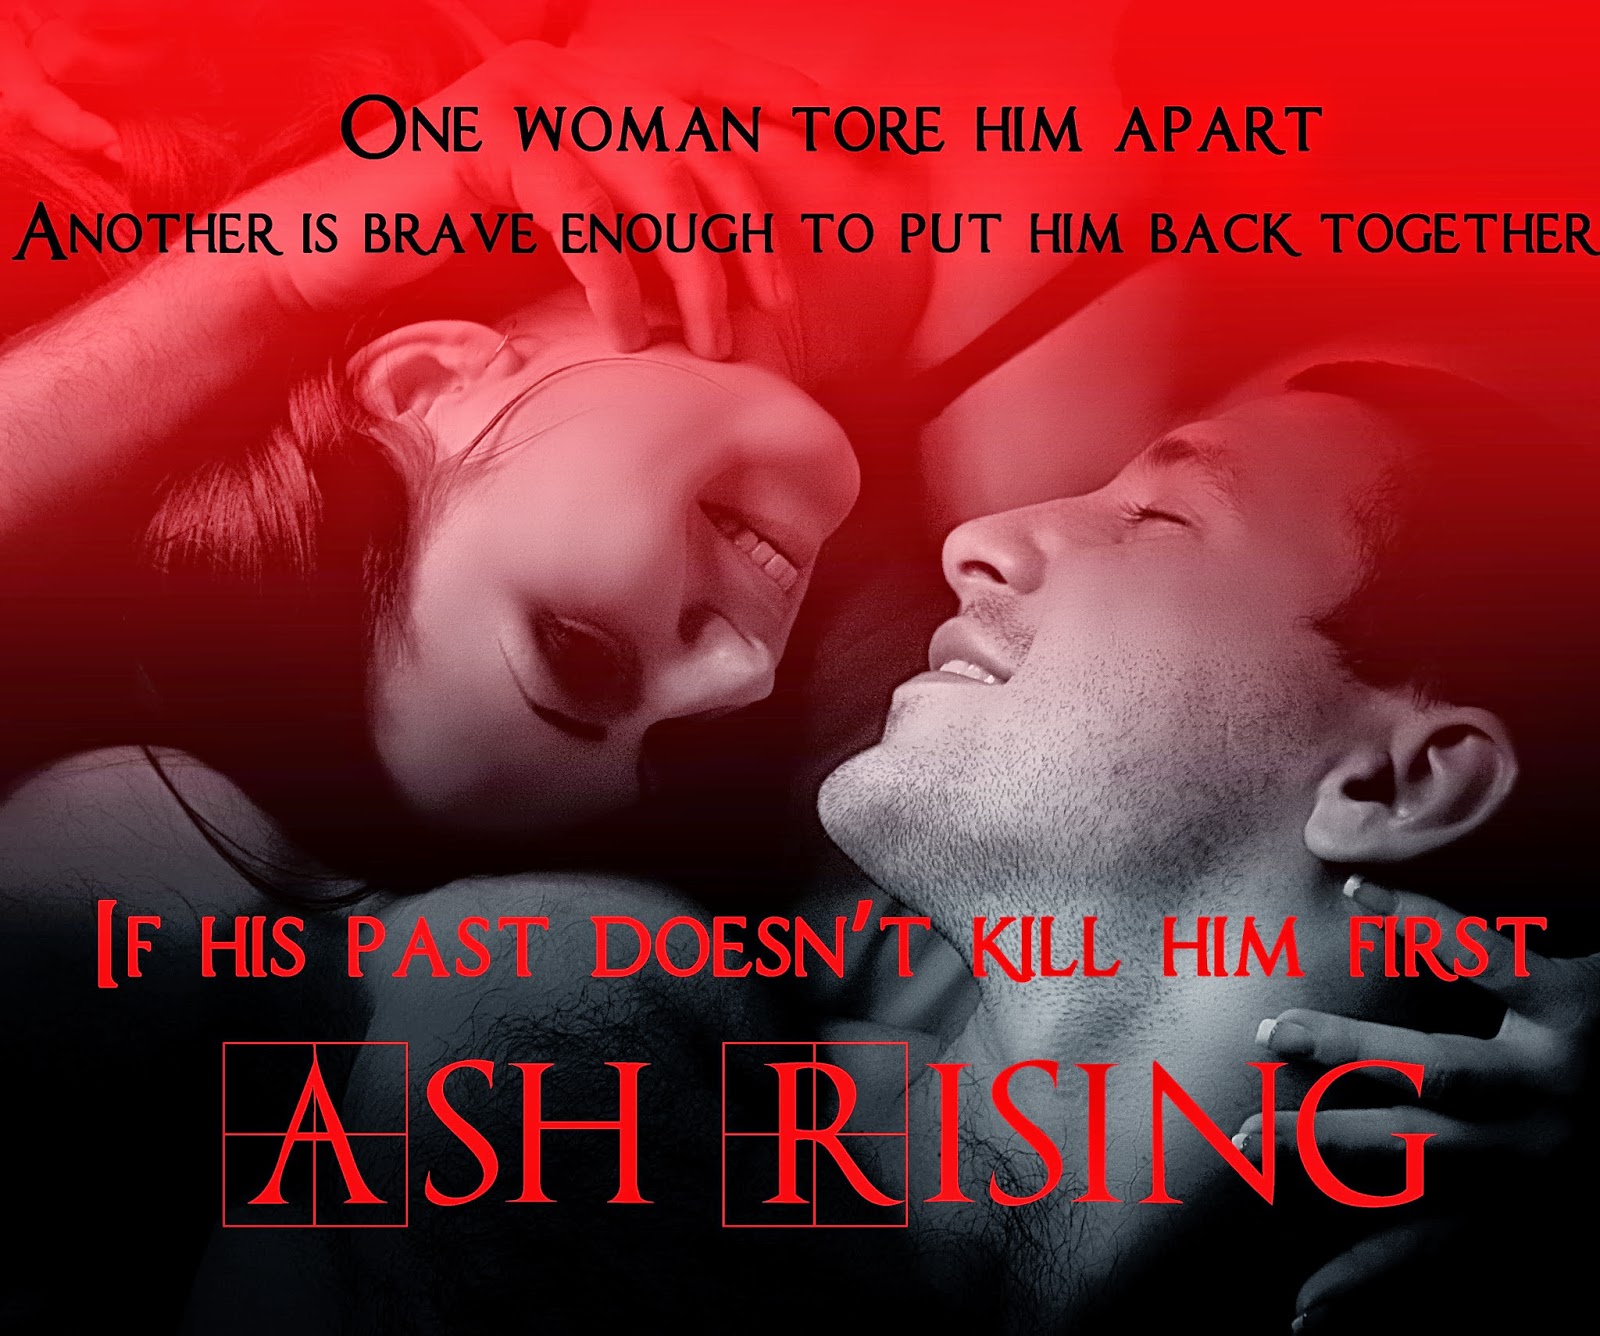  Ash rising on Amazon